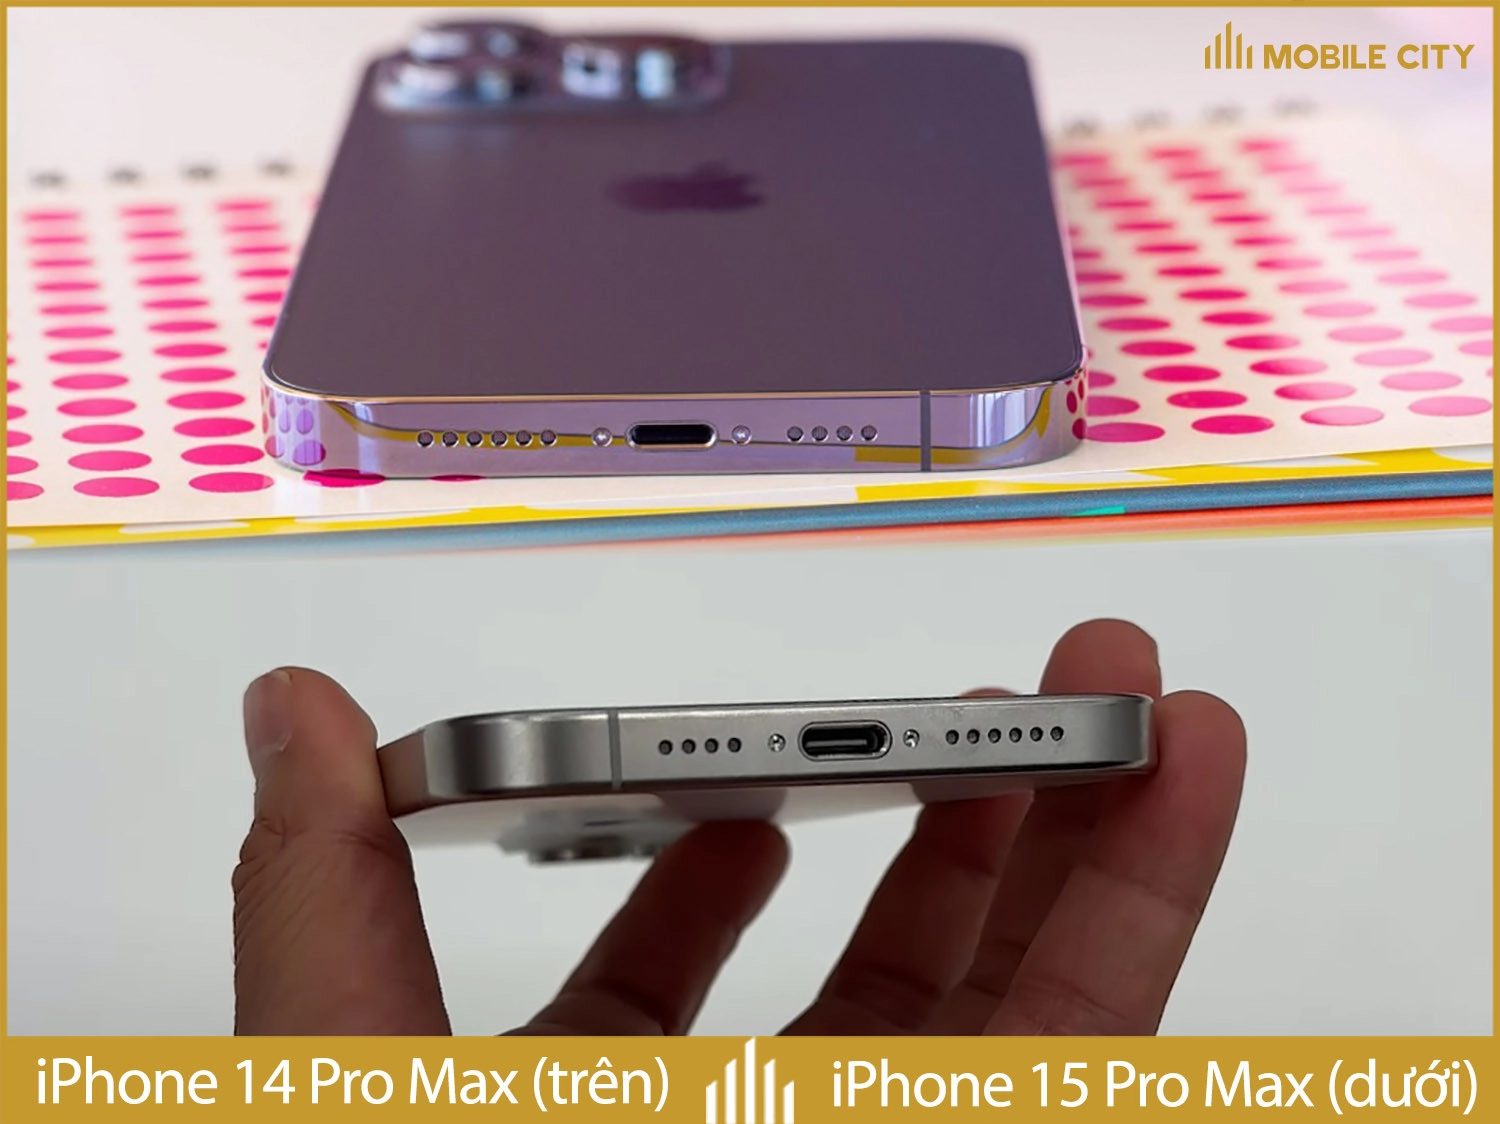  iphone-15-pro-max-sa-sanh-canh